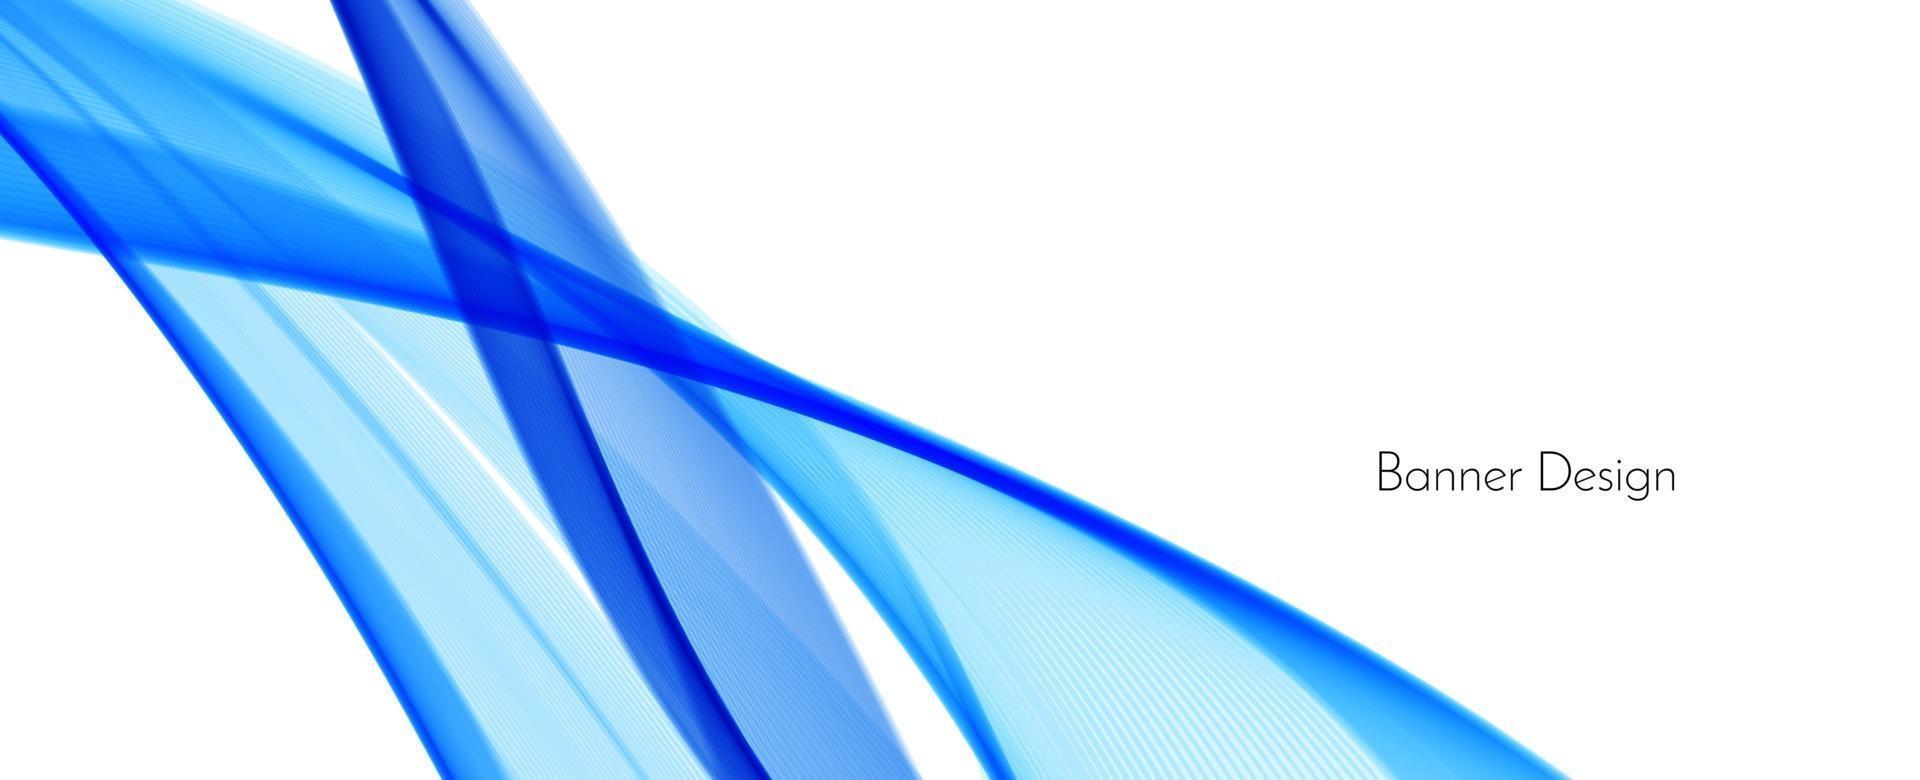 fondo astratto blu moderno della bandiera di progettazione dell'onda vettore